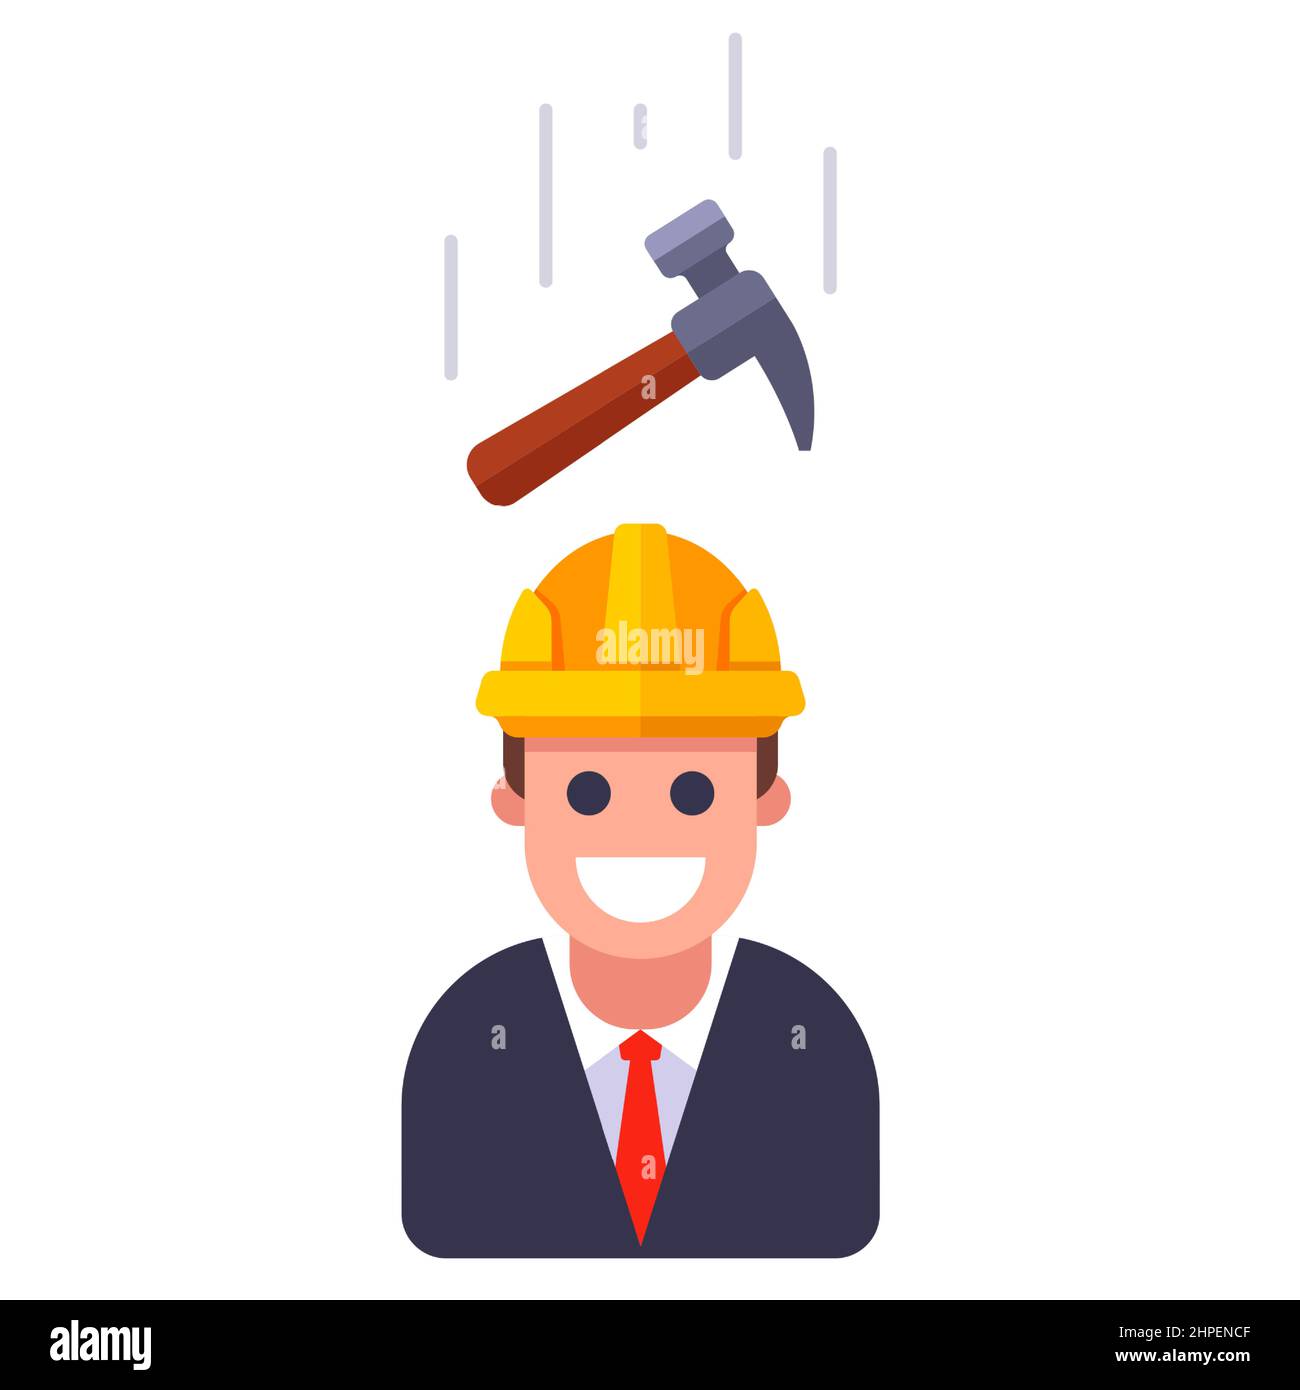 Ein Hammer, der auf eine Person in einem Helm fällt. Flache  Vektordarstellung Stock-Vektorgrafik - Alamy